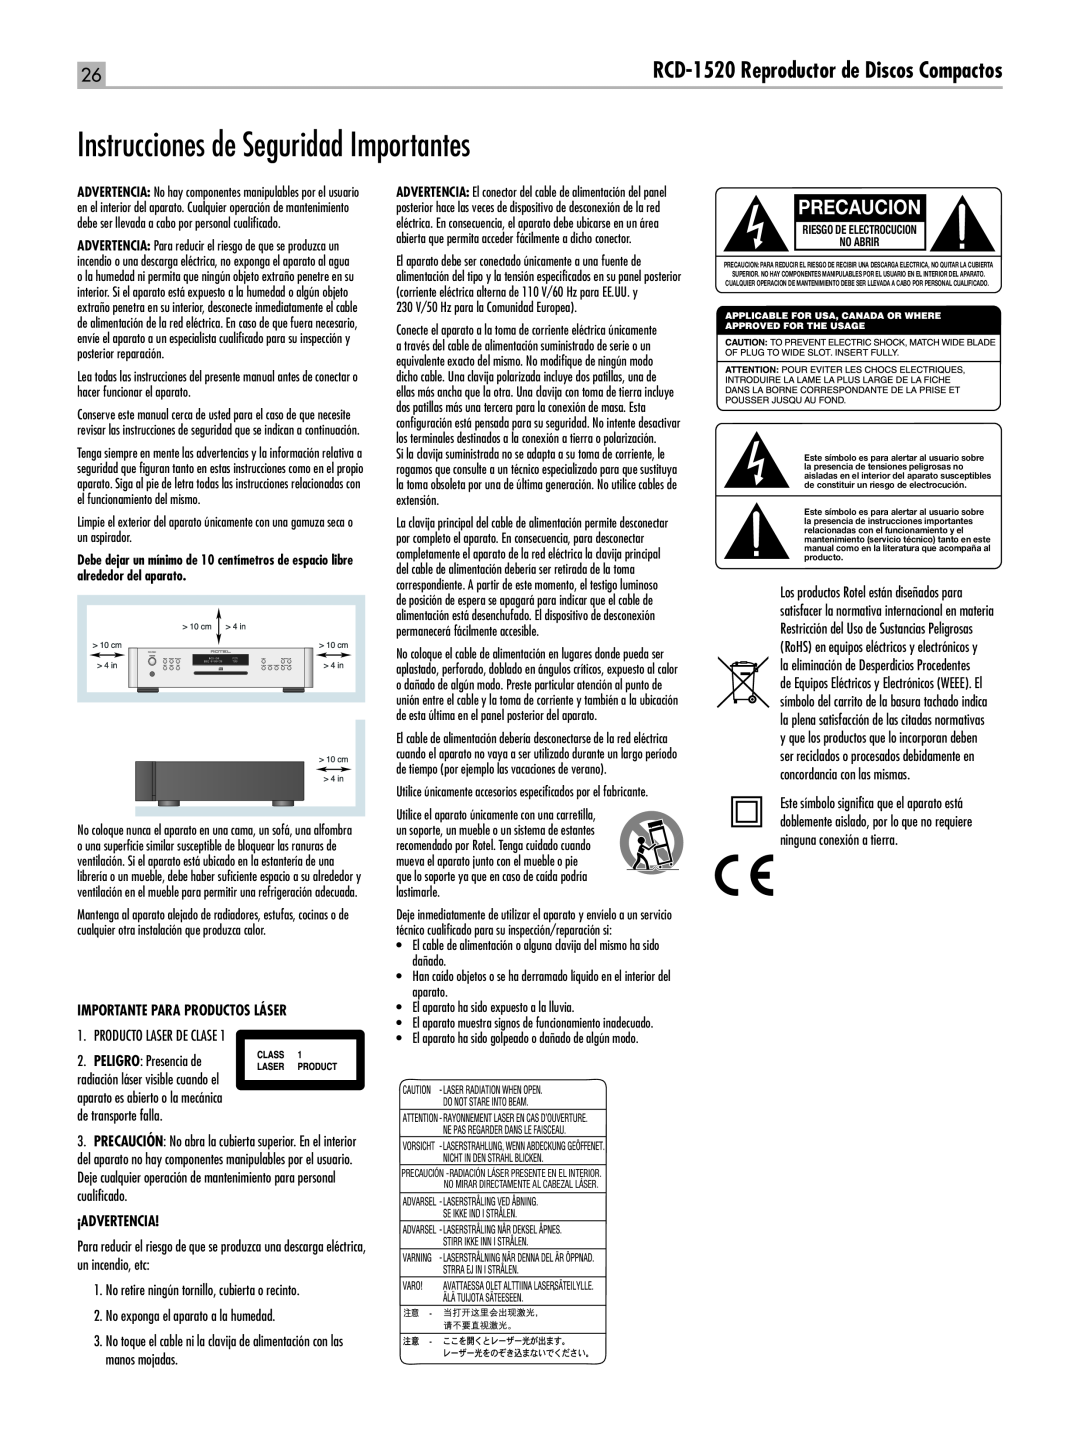 Rotel RCD-1520 owner manual Instrucciones de Seguridad Importantes, Precaucion, Riesgo De Electrocucion No Abrir 